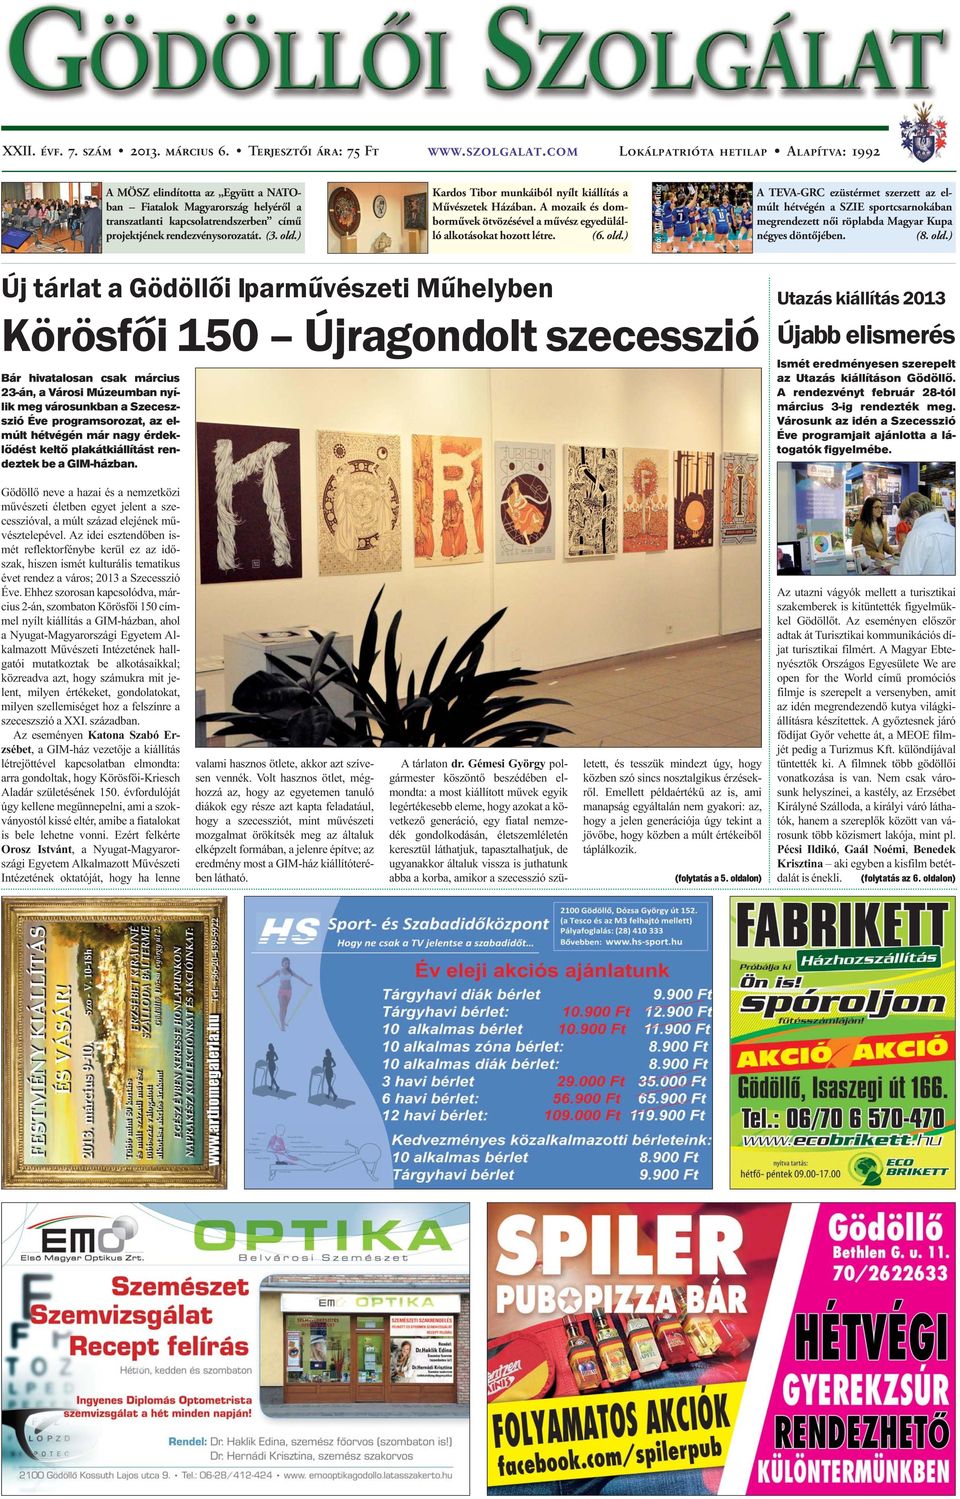 ) Kardos Tibor munkáiból nyílt kiállítás a Művészetek Házában. A mozaik és domborművek ötvözésével a művész egyedülálló alkotásokat hozott létre. (6. old.